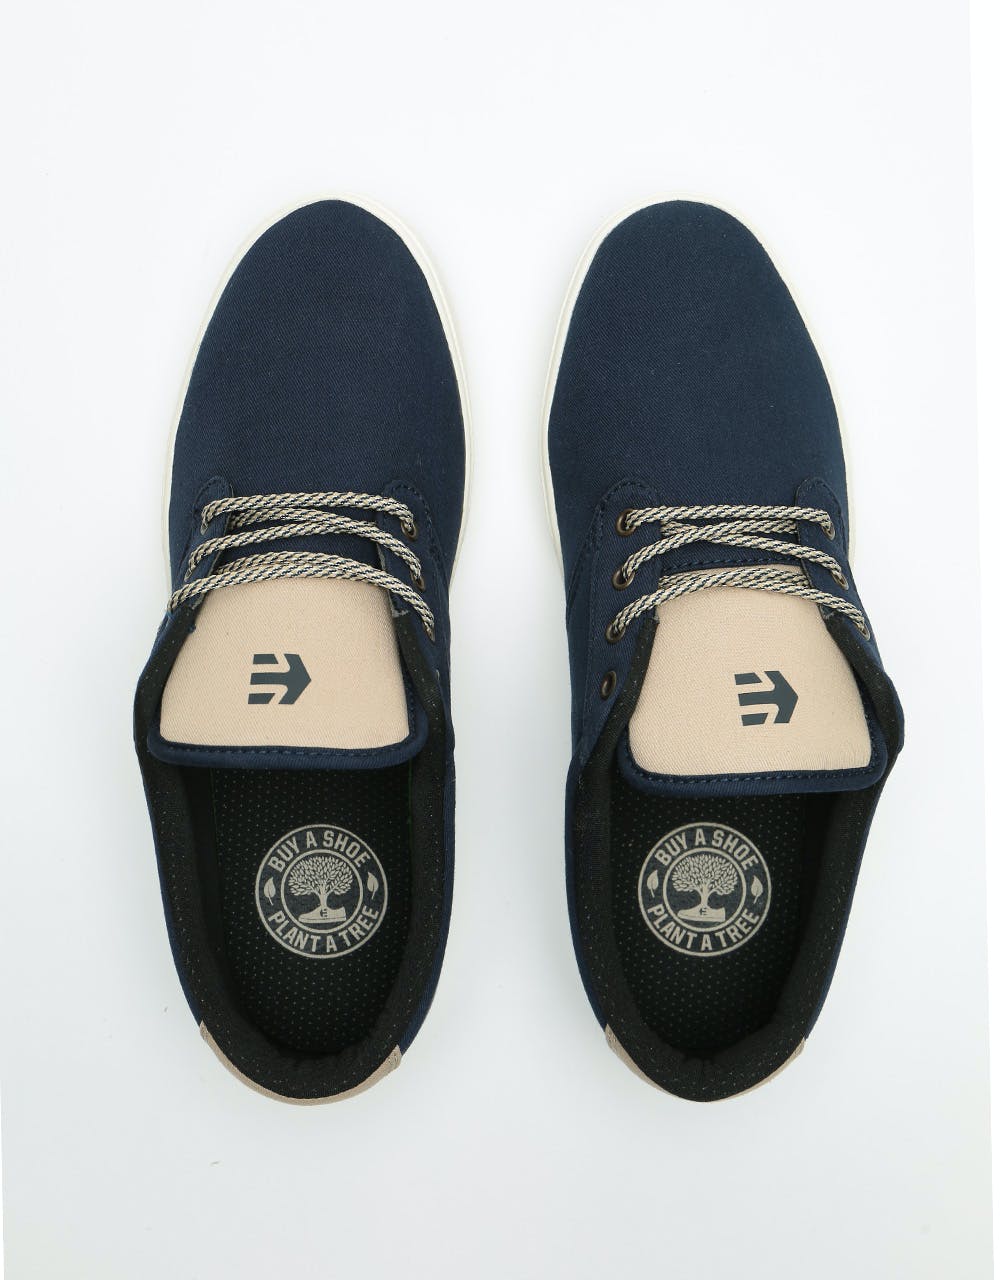 Etnies Jameson Preserve Skate Shoes - Navy/Tan